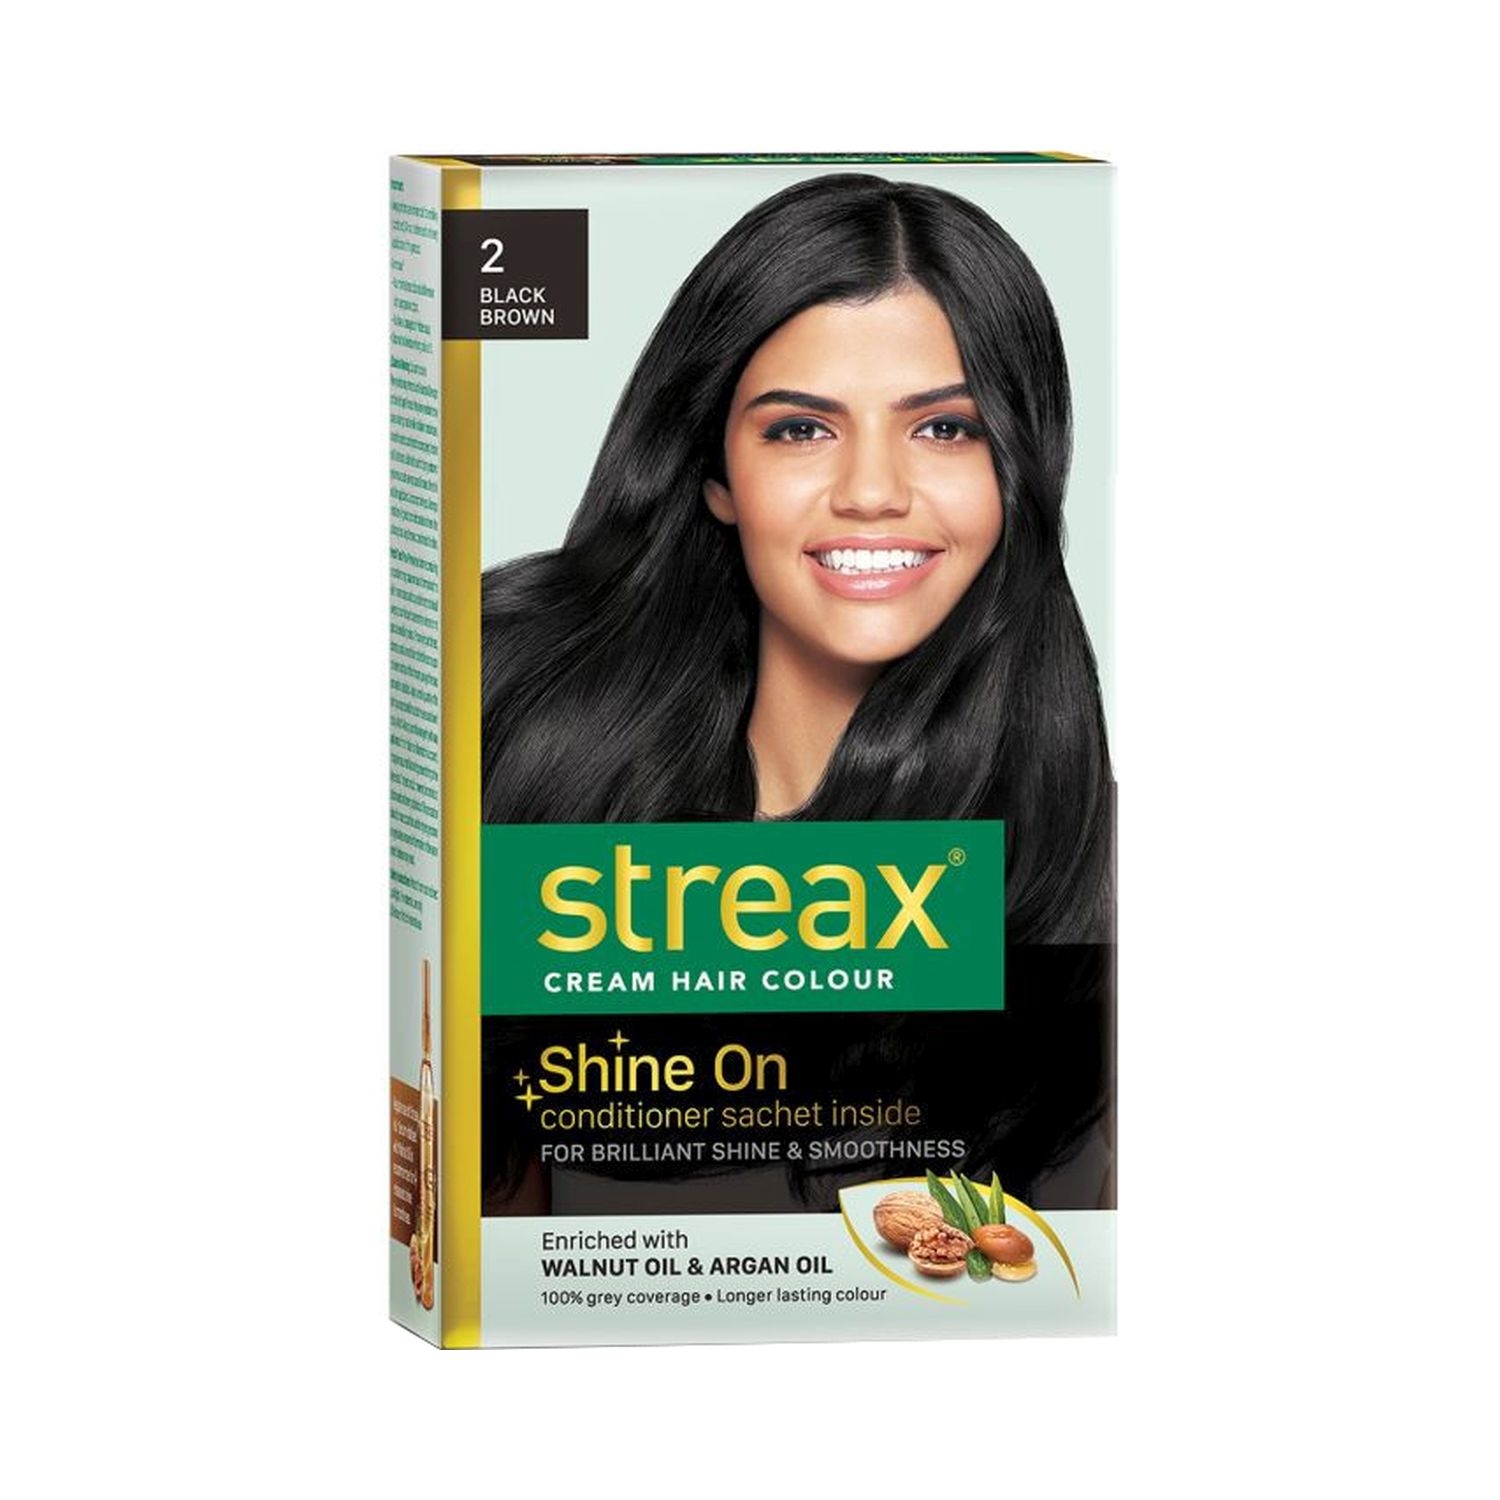 Streax Hair Colour - 2 Black Brown (70gm+50ml)